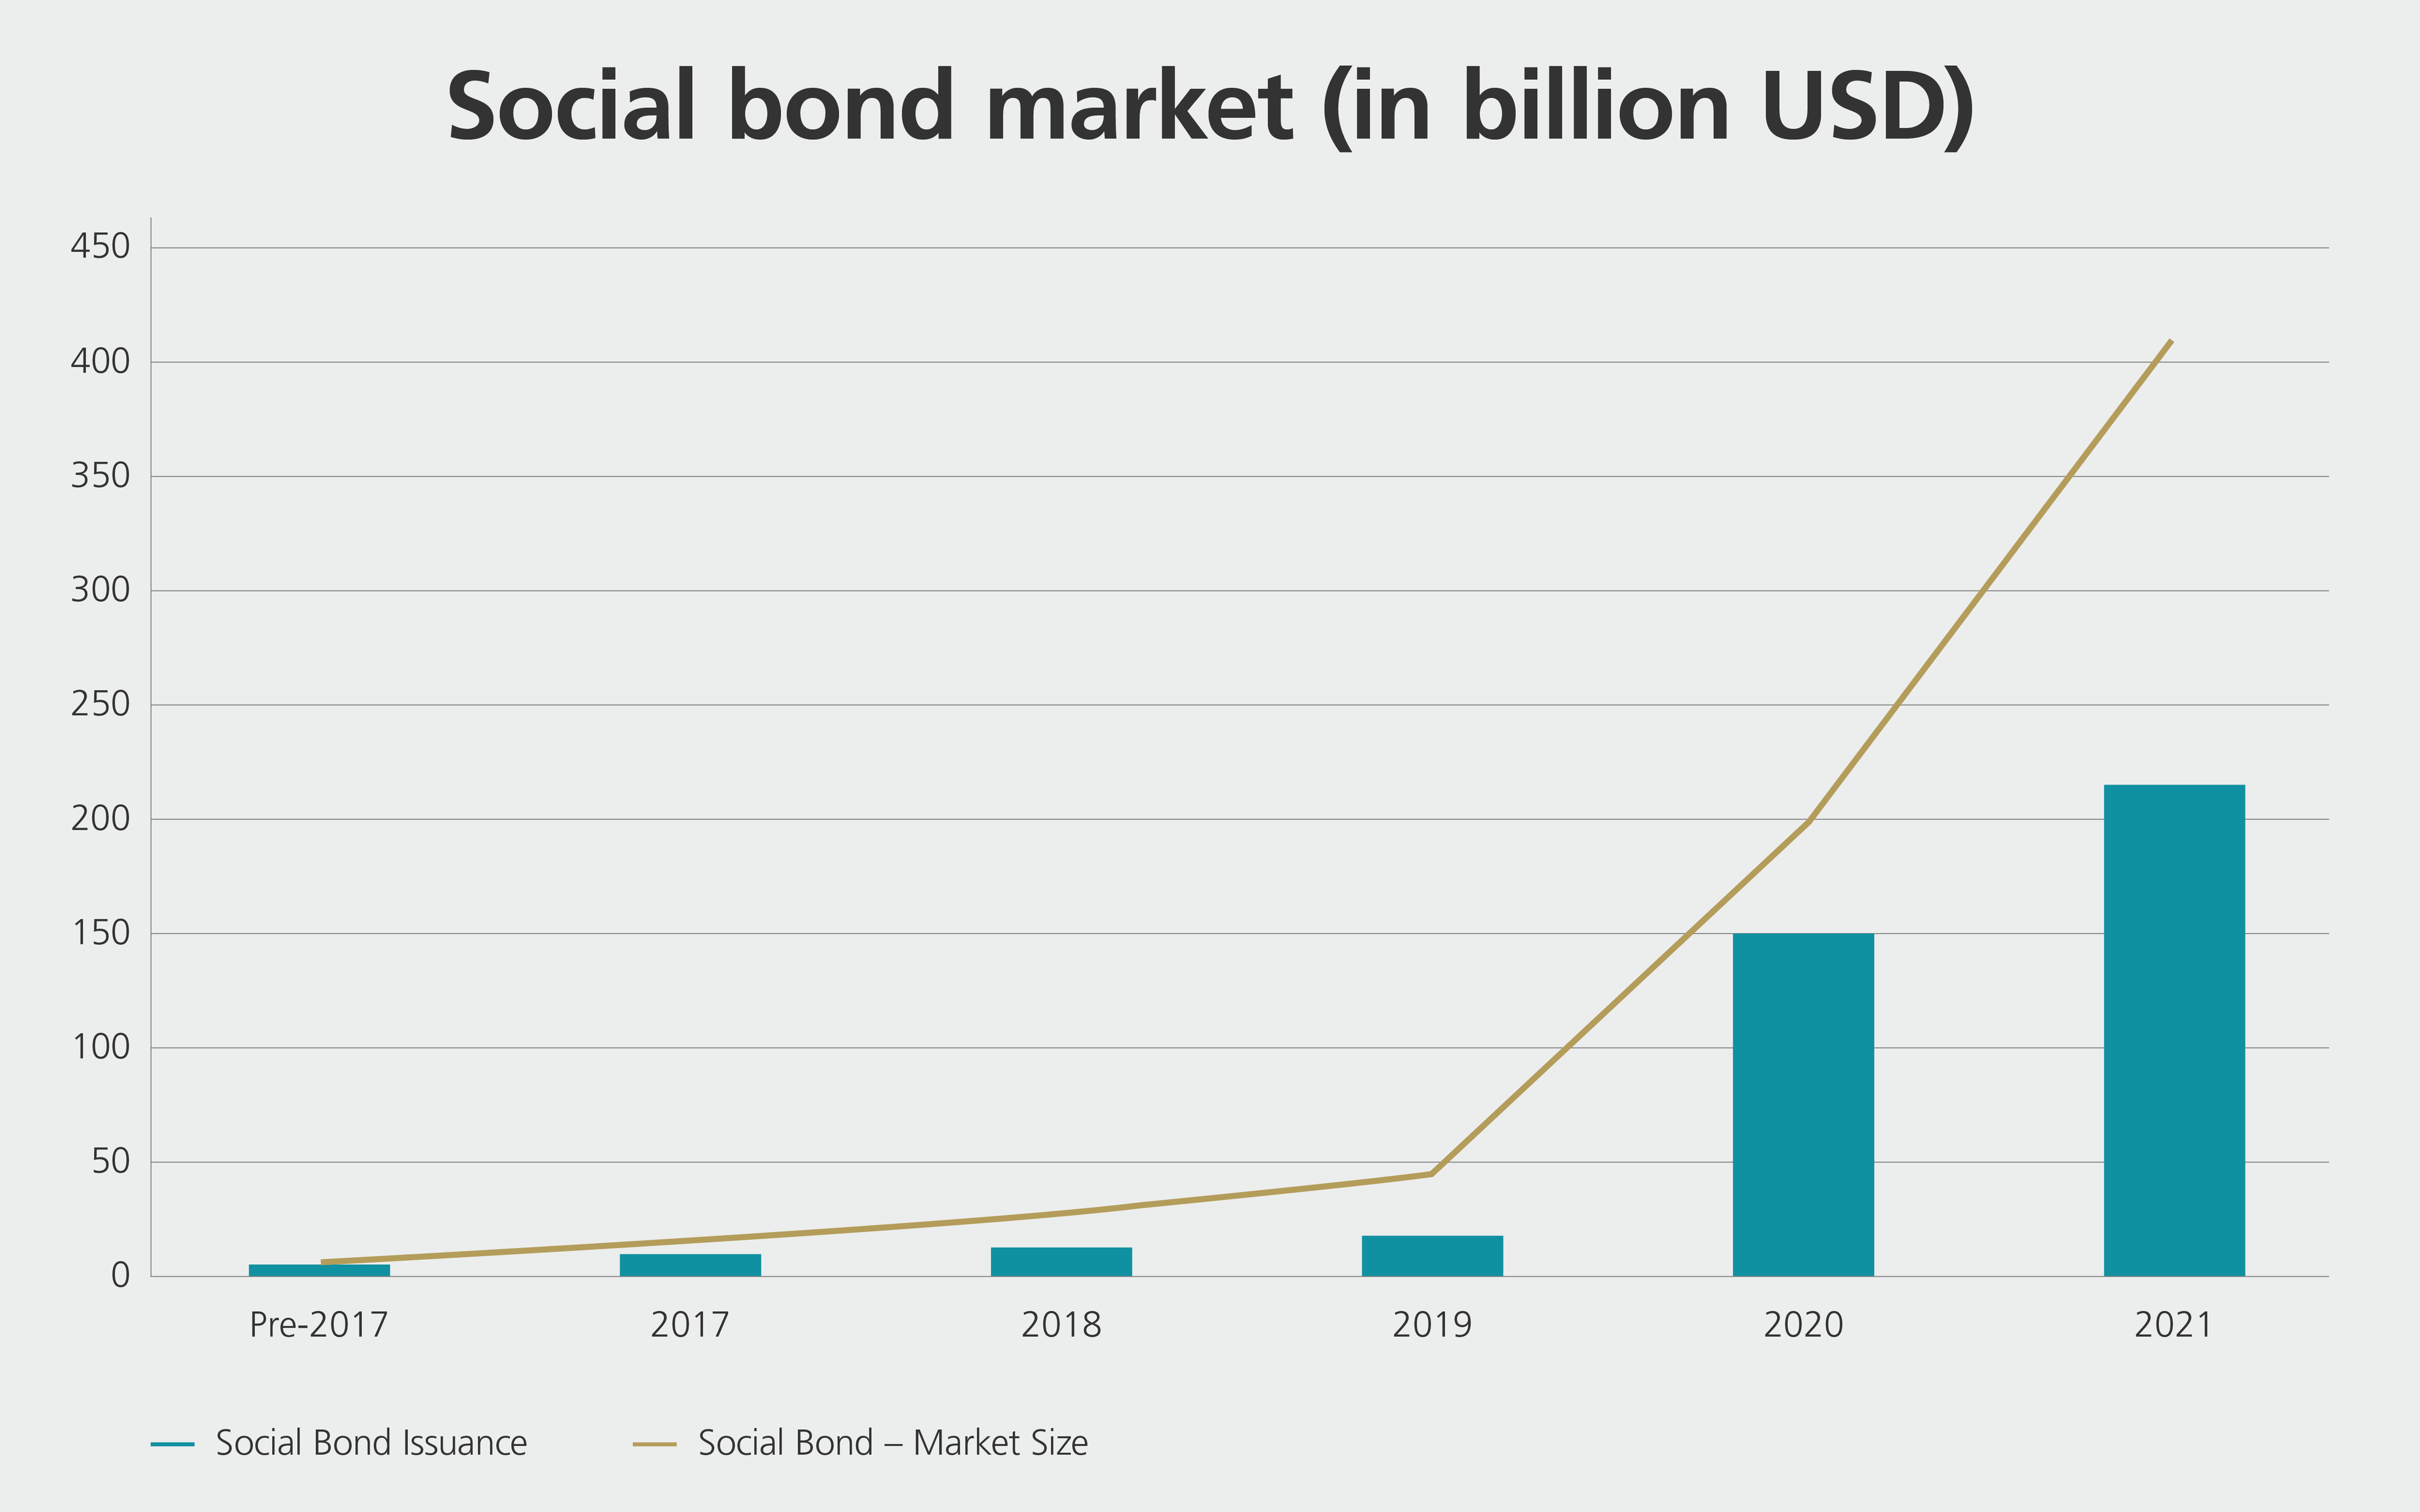 Social bond markets